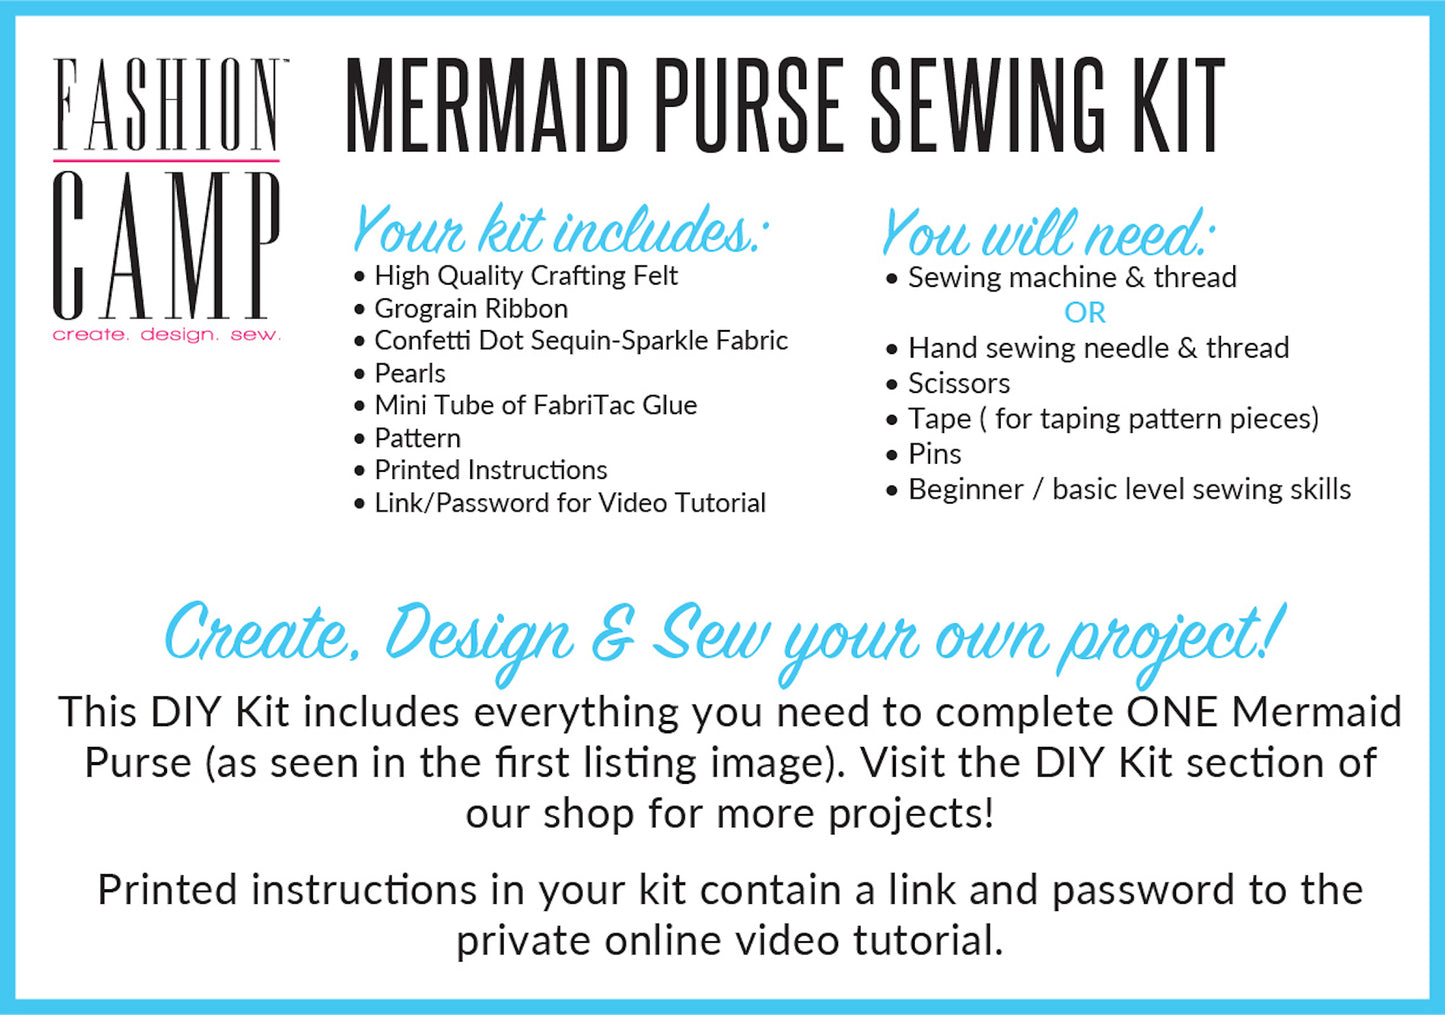 DIY Mermaid Purse Sewing Kit & Video Tutorial